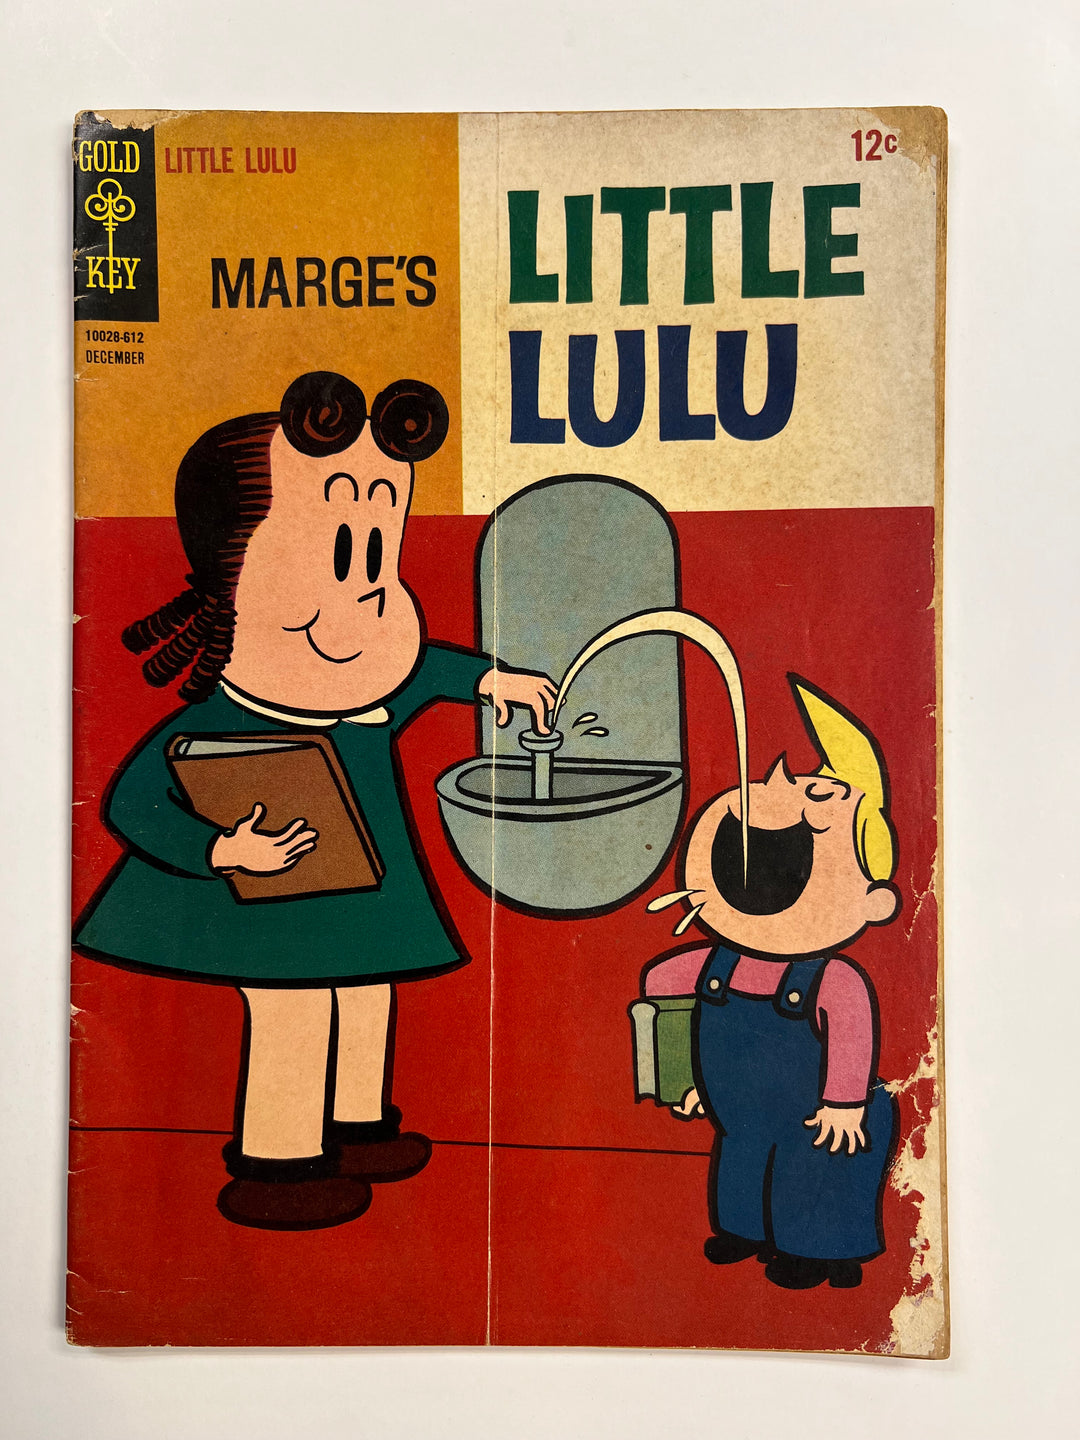 Marge's Little Lulu #182 Gold Key 1962 FR